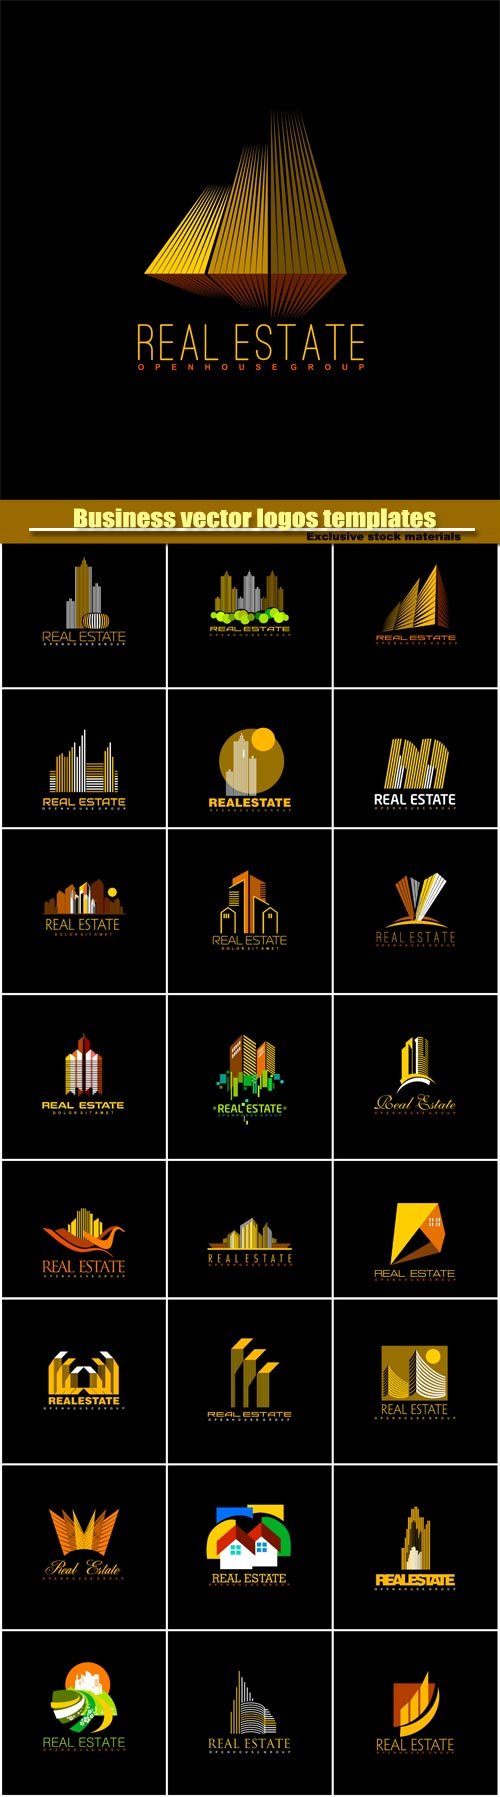 Business vector logos templates, creative gold figure icon #2